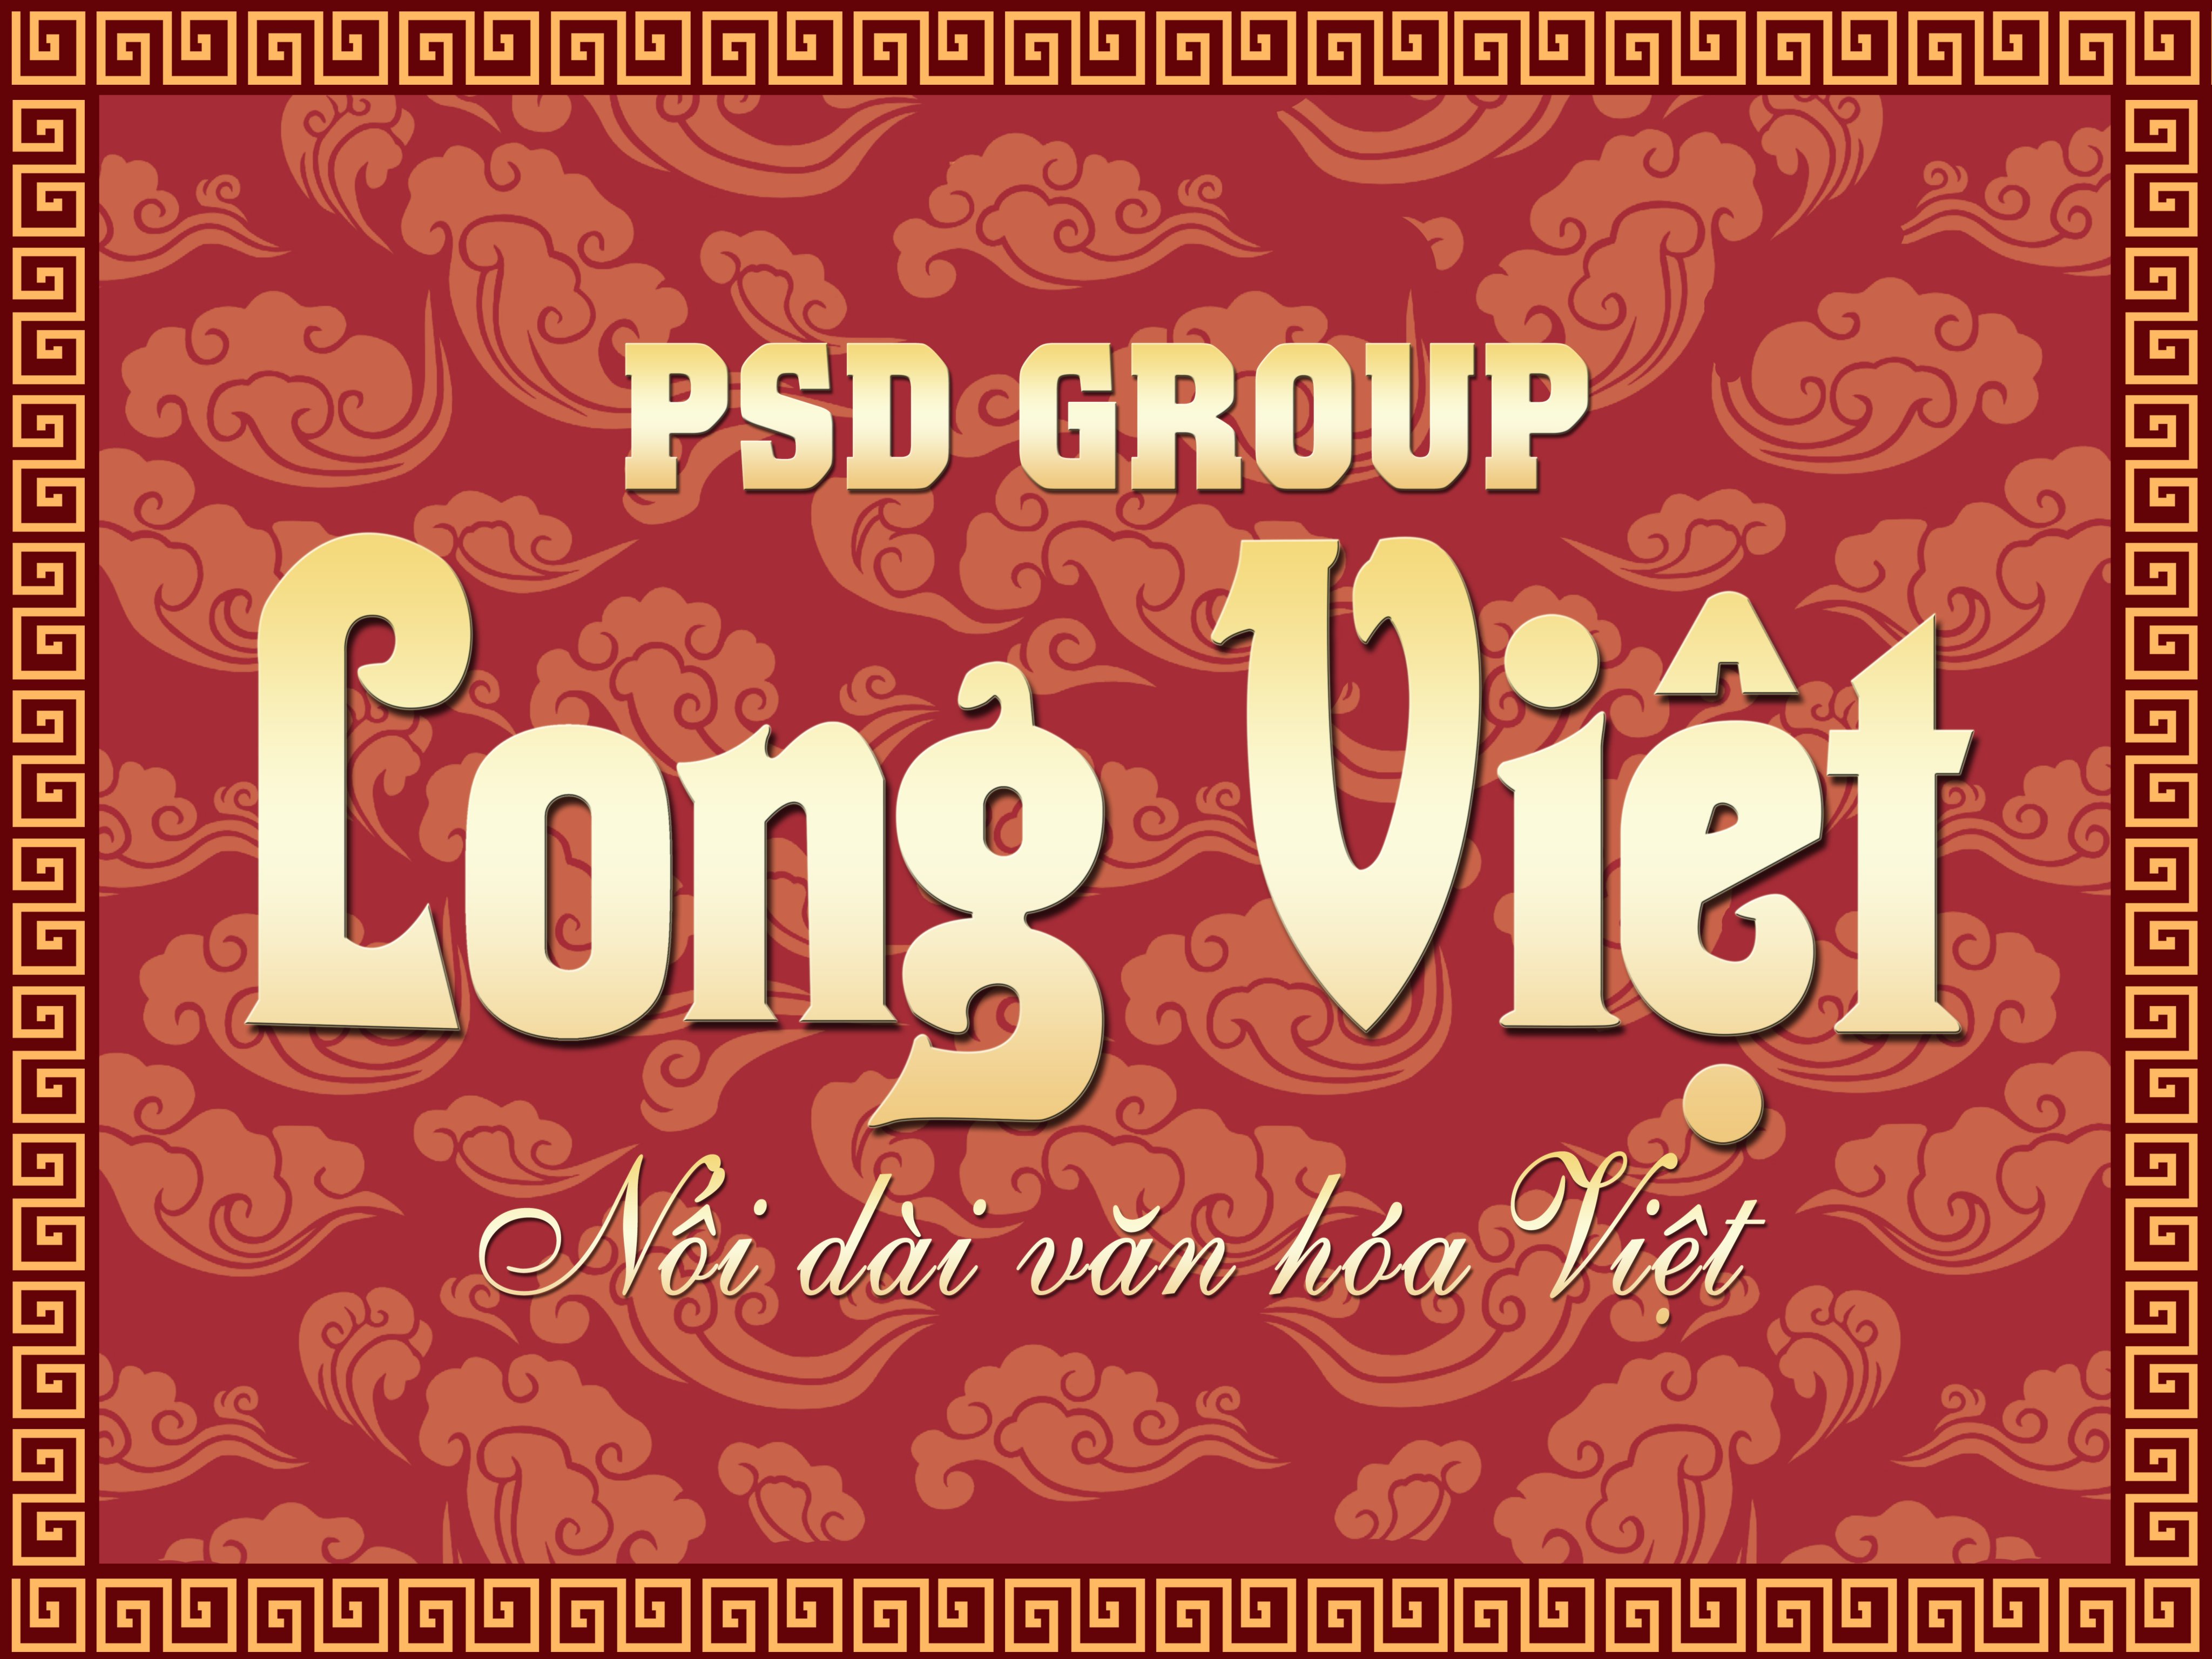 Logo khu du lịch sinh thái Long Việt